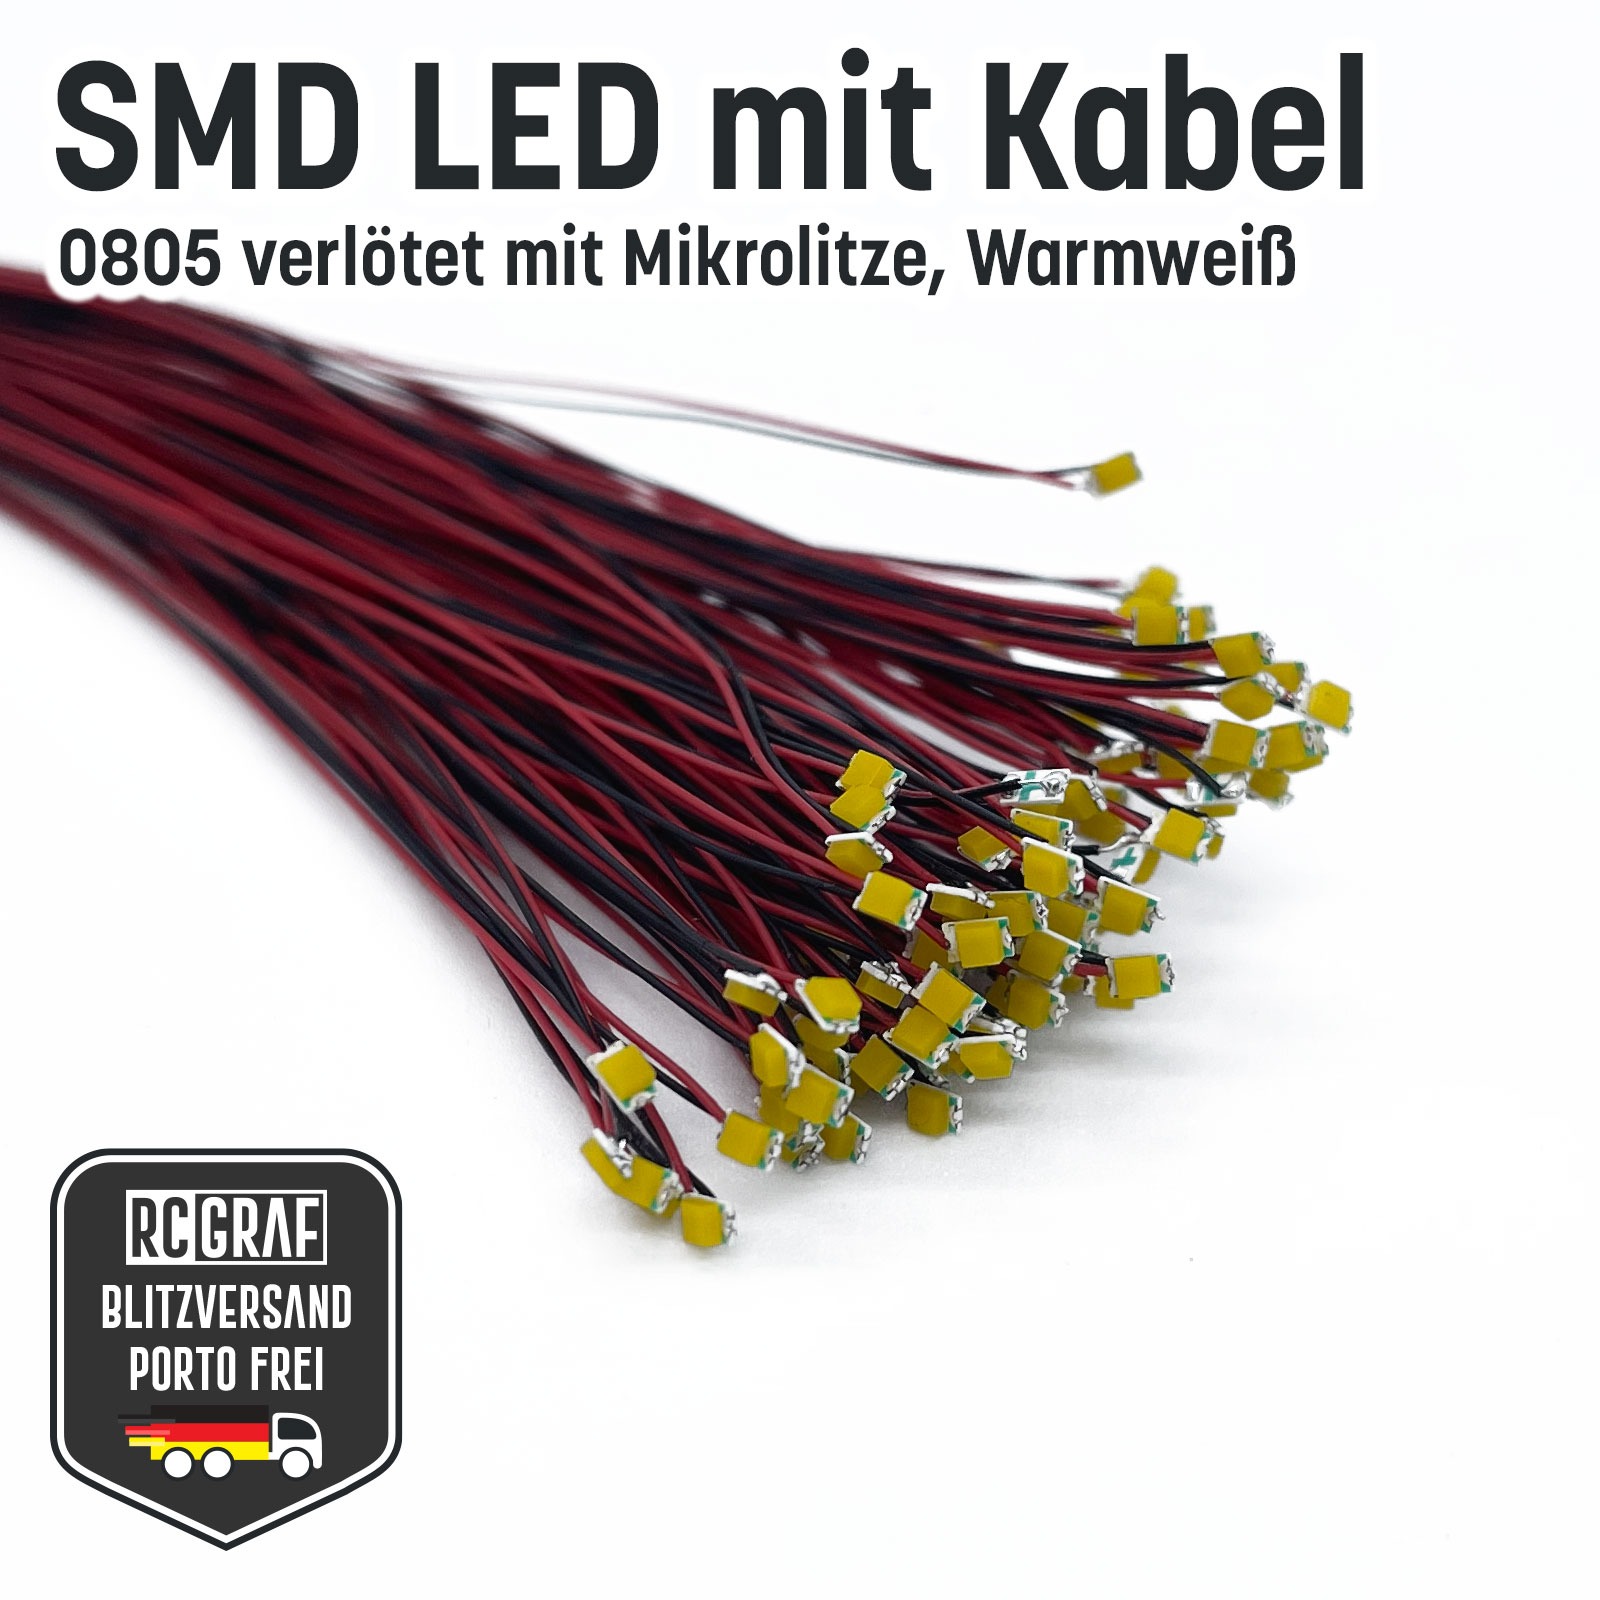 SMD LED 0805 Microlitze 30cm verlötet 8